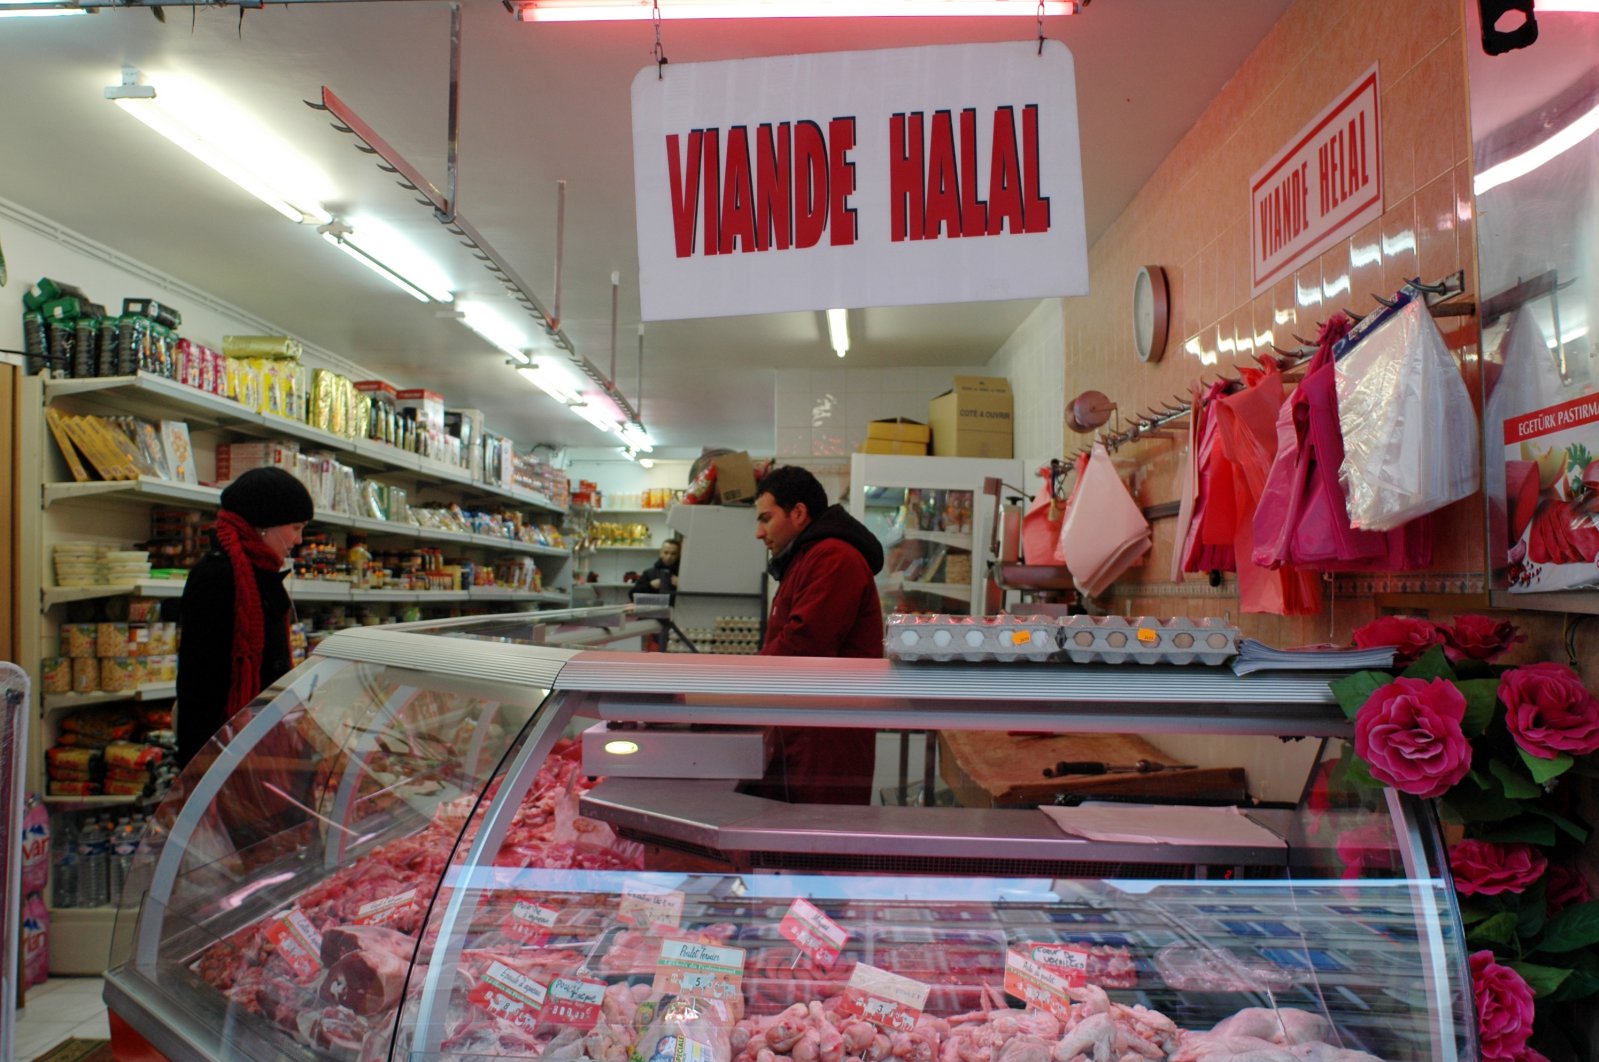 A butcher shop in Paris, France, on Feb. 19, 2012. (Reuters File Photo)